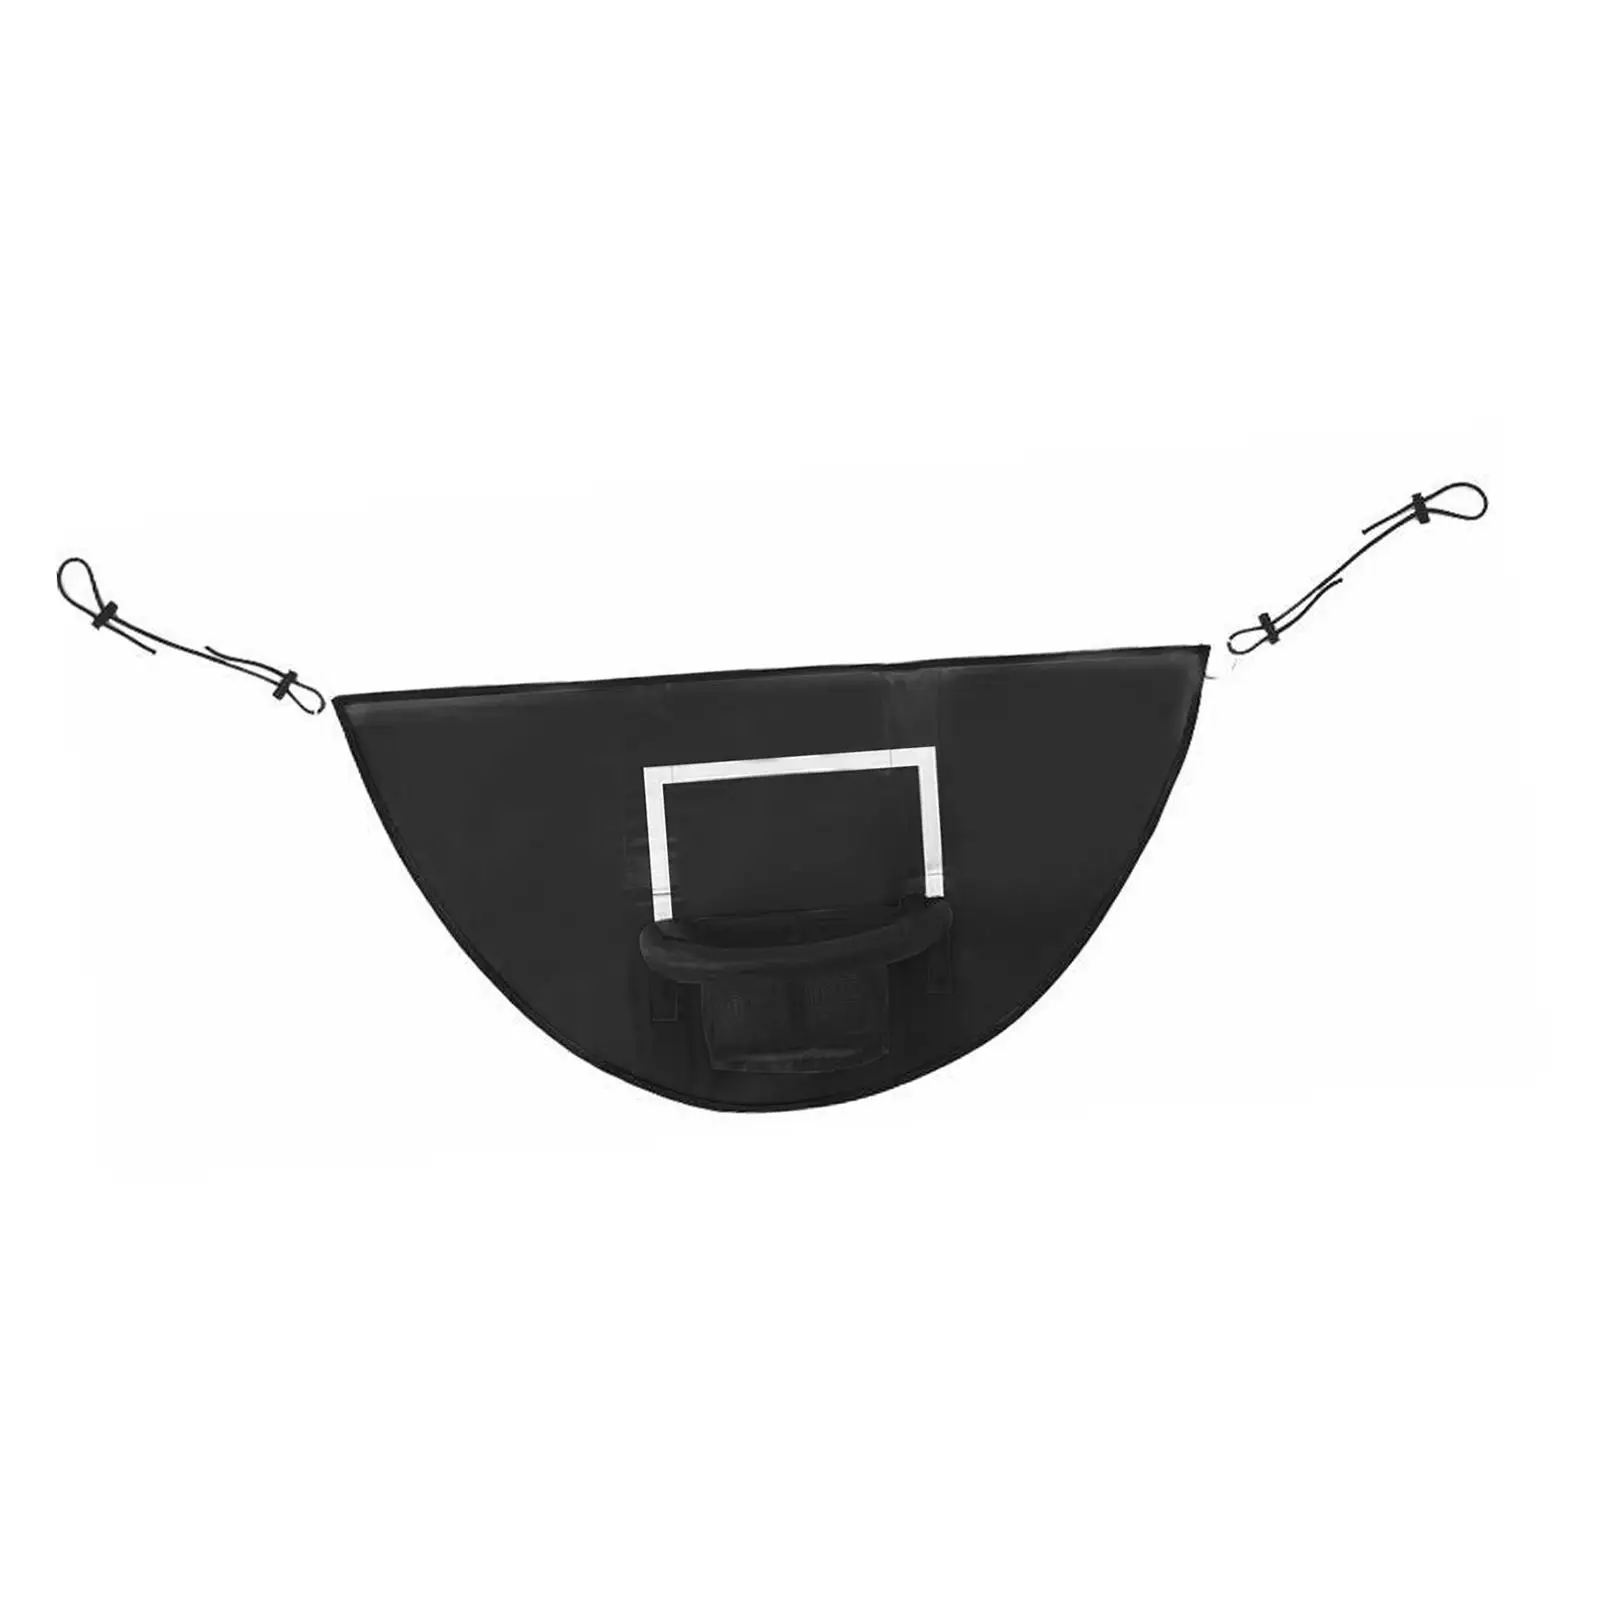 Mini Basketball Hoop for Trampoline Breakaway Rim for Safe Dunking Easy to Install Basketball Frame Trampoline Basketball Goal